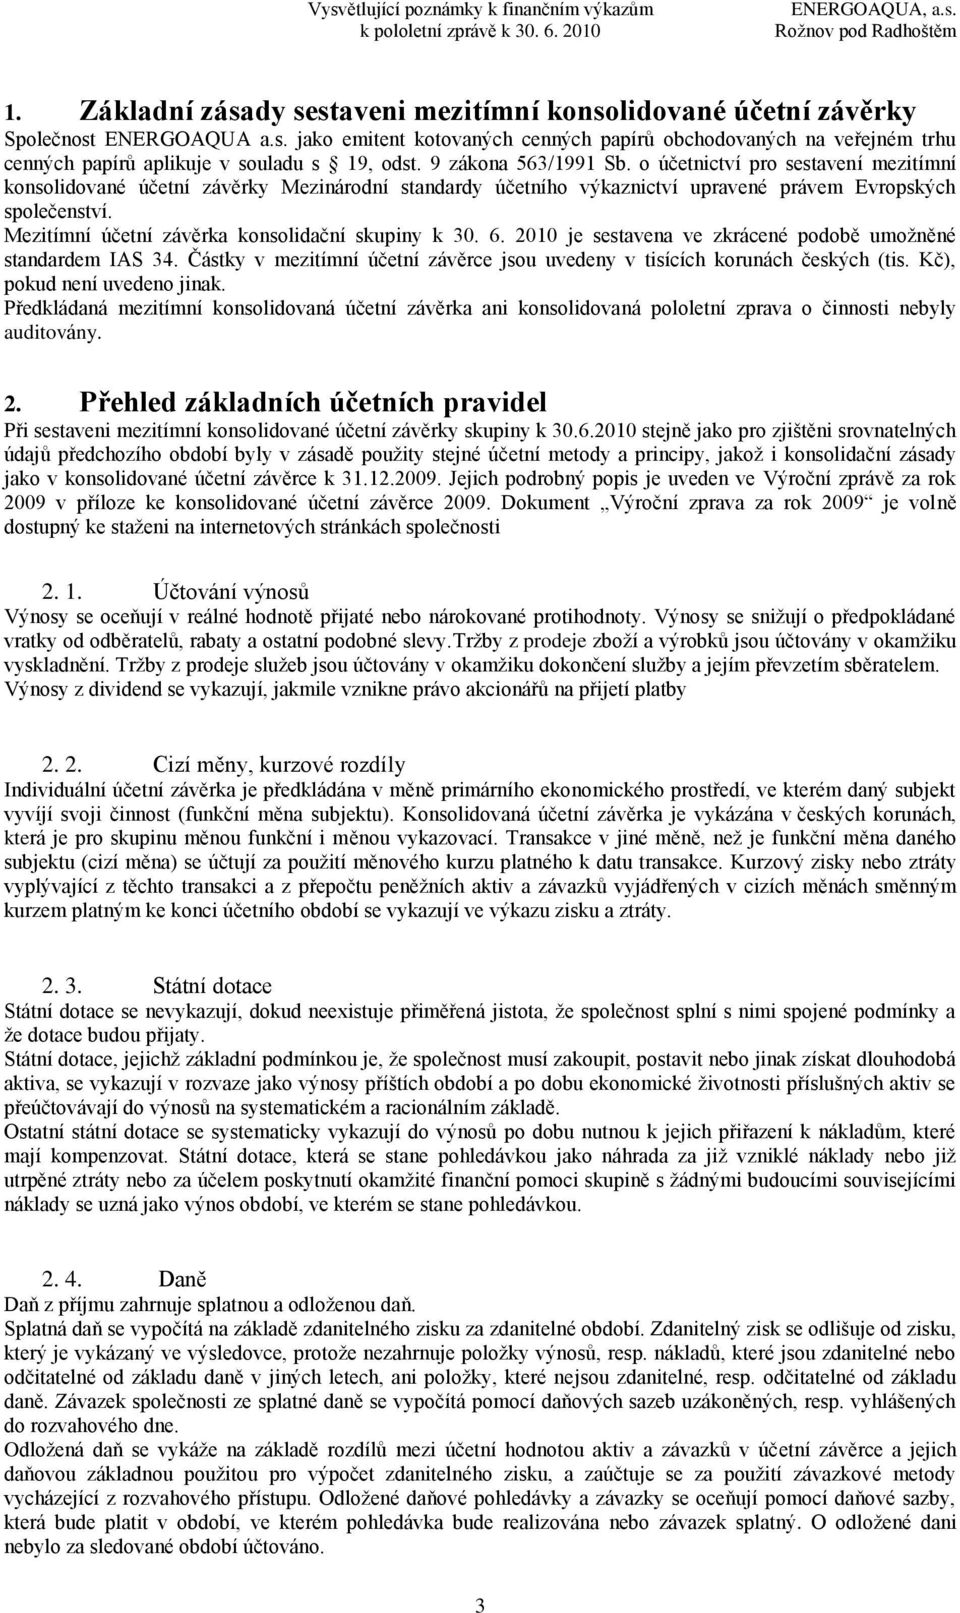 Mezitímní účetní závěrka konsolidační skupiny k 30. 6. 2010 je sestavena ve zkrácené podobě umoţněné standardem IAS 34. Částky v mezitímní účetní závěrce jsou uvedeny v tisících korunách českých (tis.